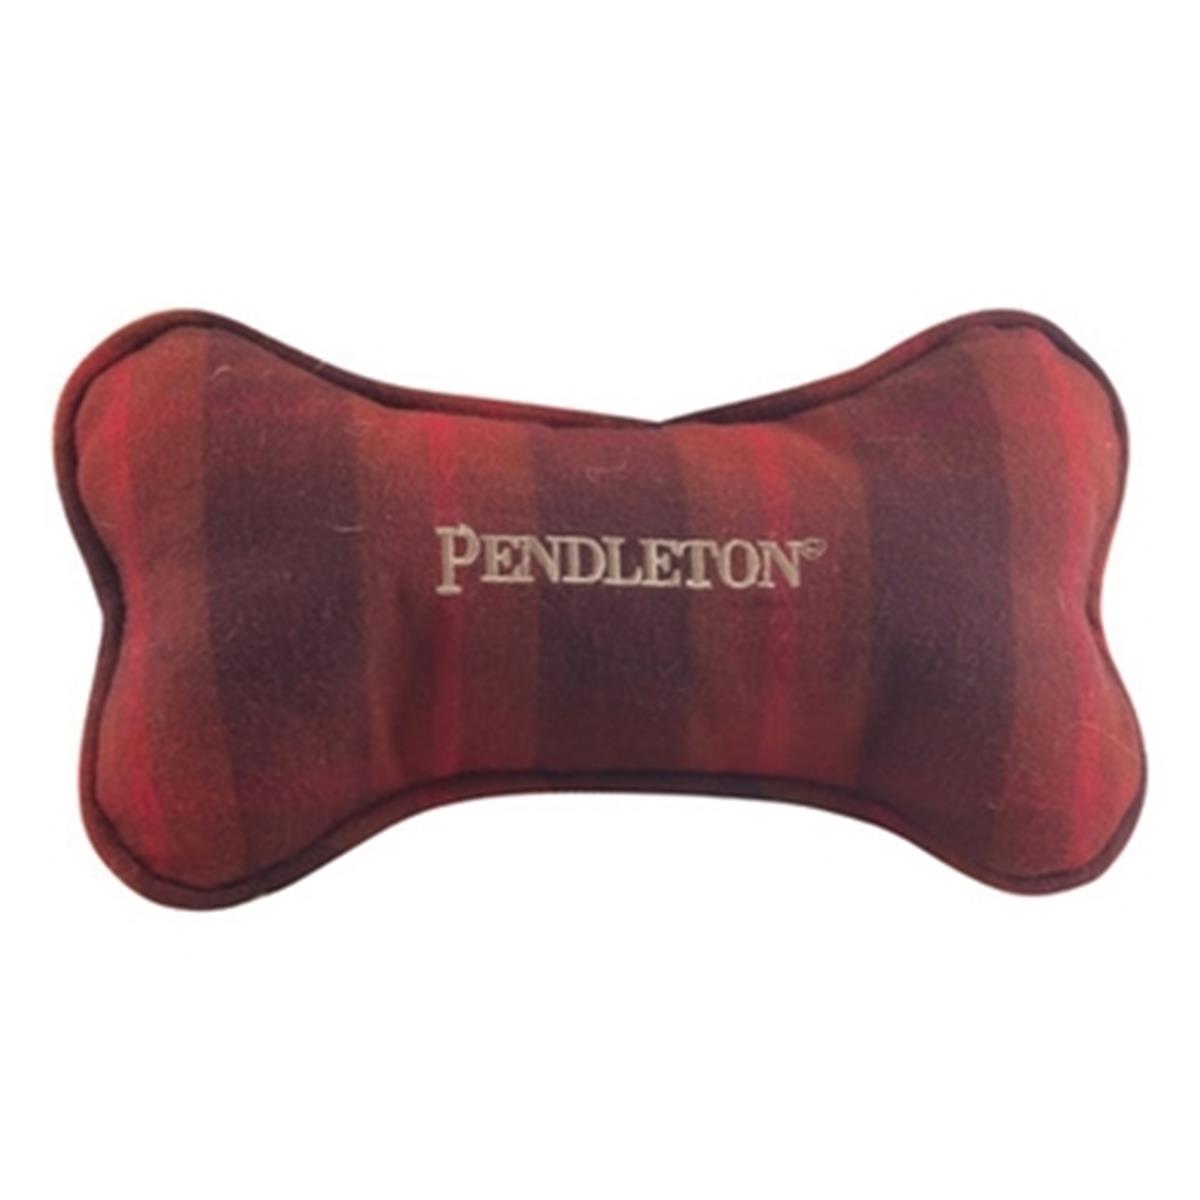 Carolina Pet 0pp7002-gst Pendleton Pet Bone Toy - Grey Stewart Tartan